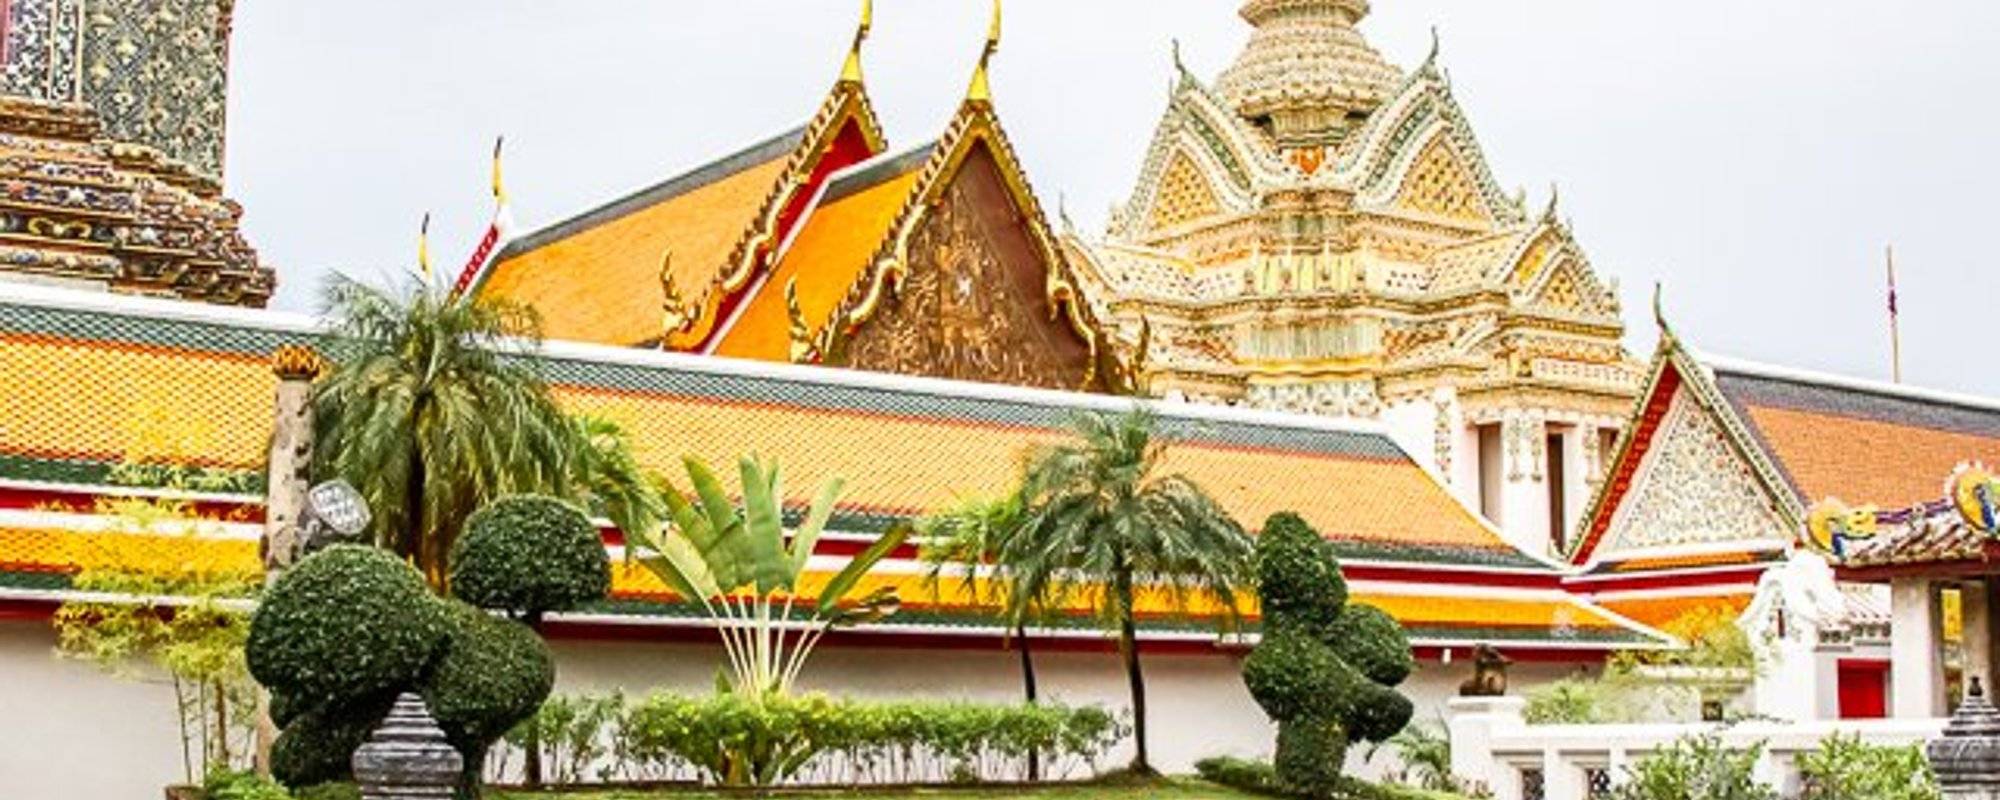 Visiting Wat Pho, a top ranked royal temple in Bangkok